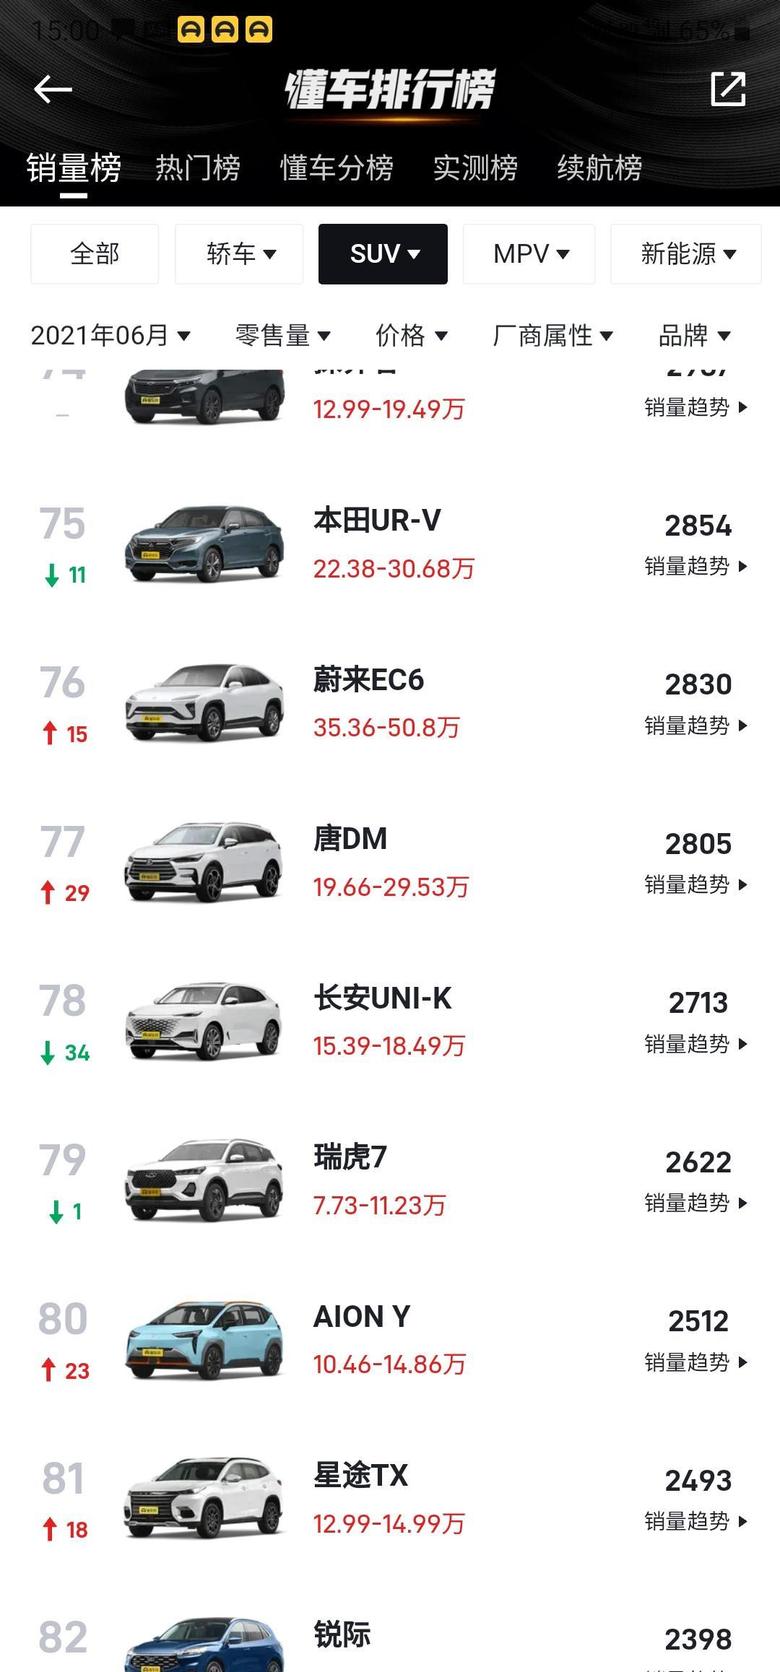 长安uni k-6月份销量2713，有点惨啊